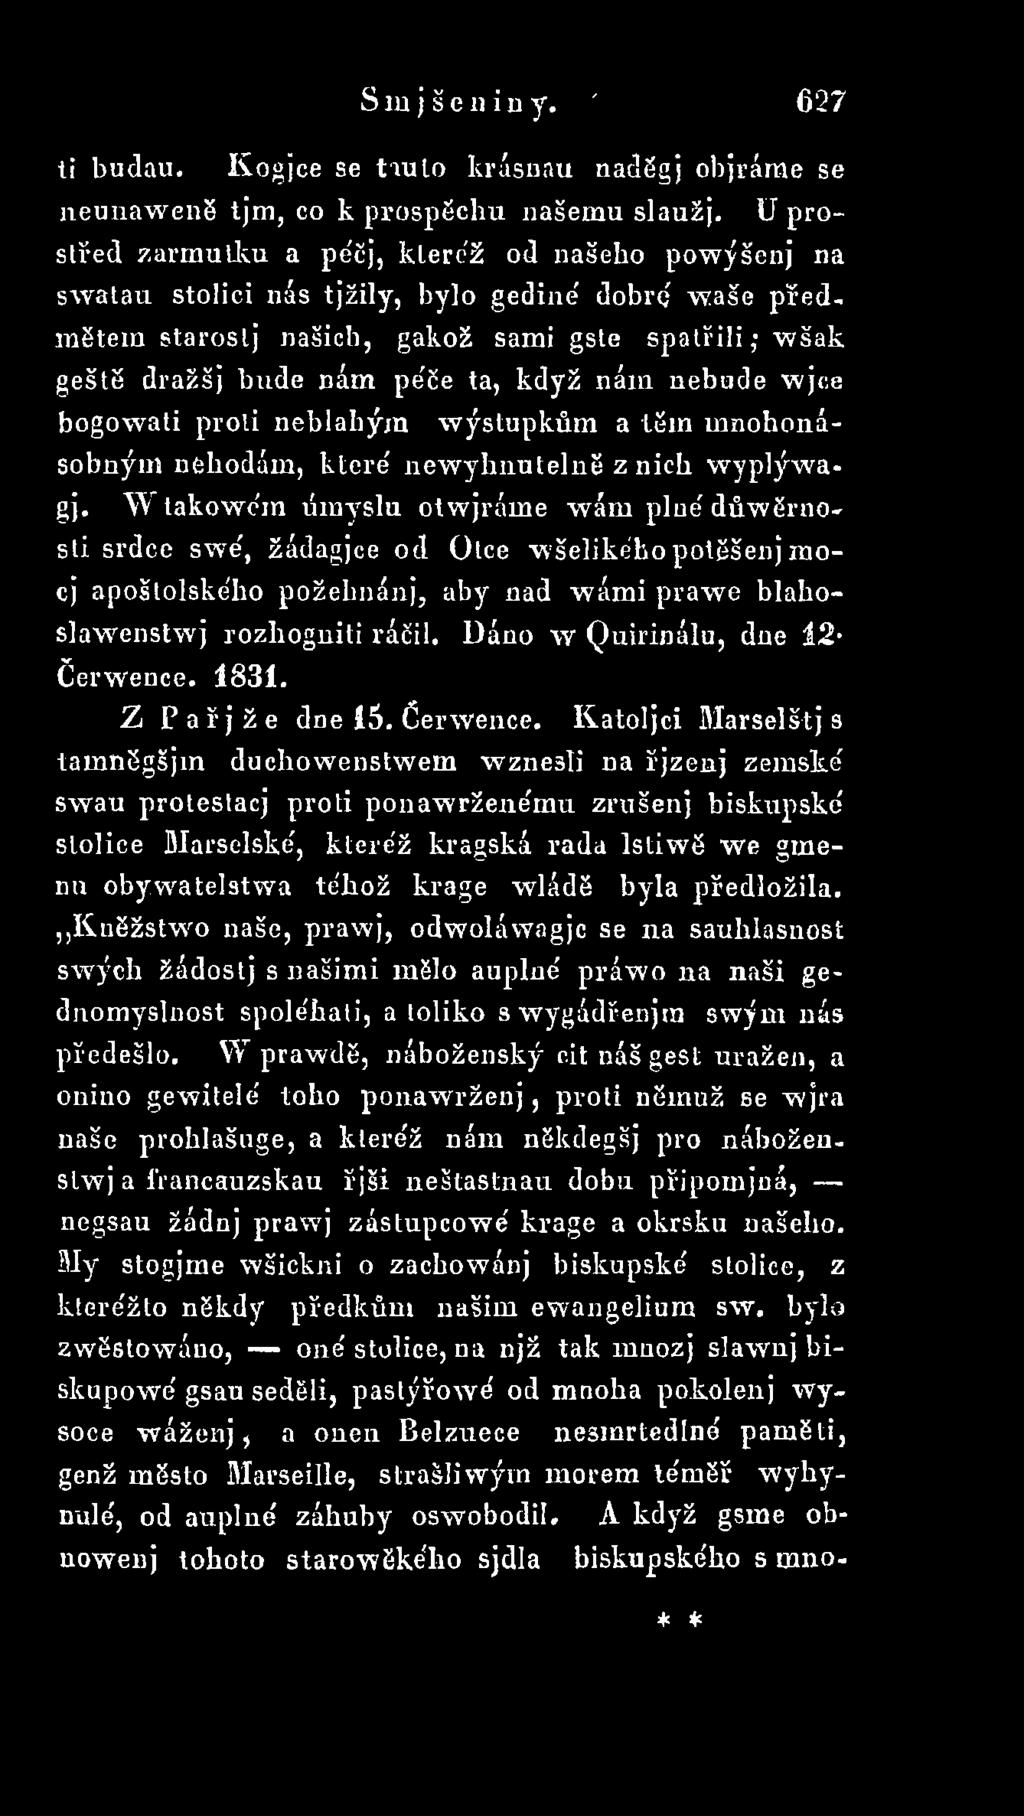 Uáno w Quirinálu, dne 1 2 Čerwence. 1831. Z Pařjže dne 15. čerw en ce.